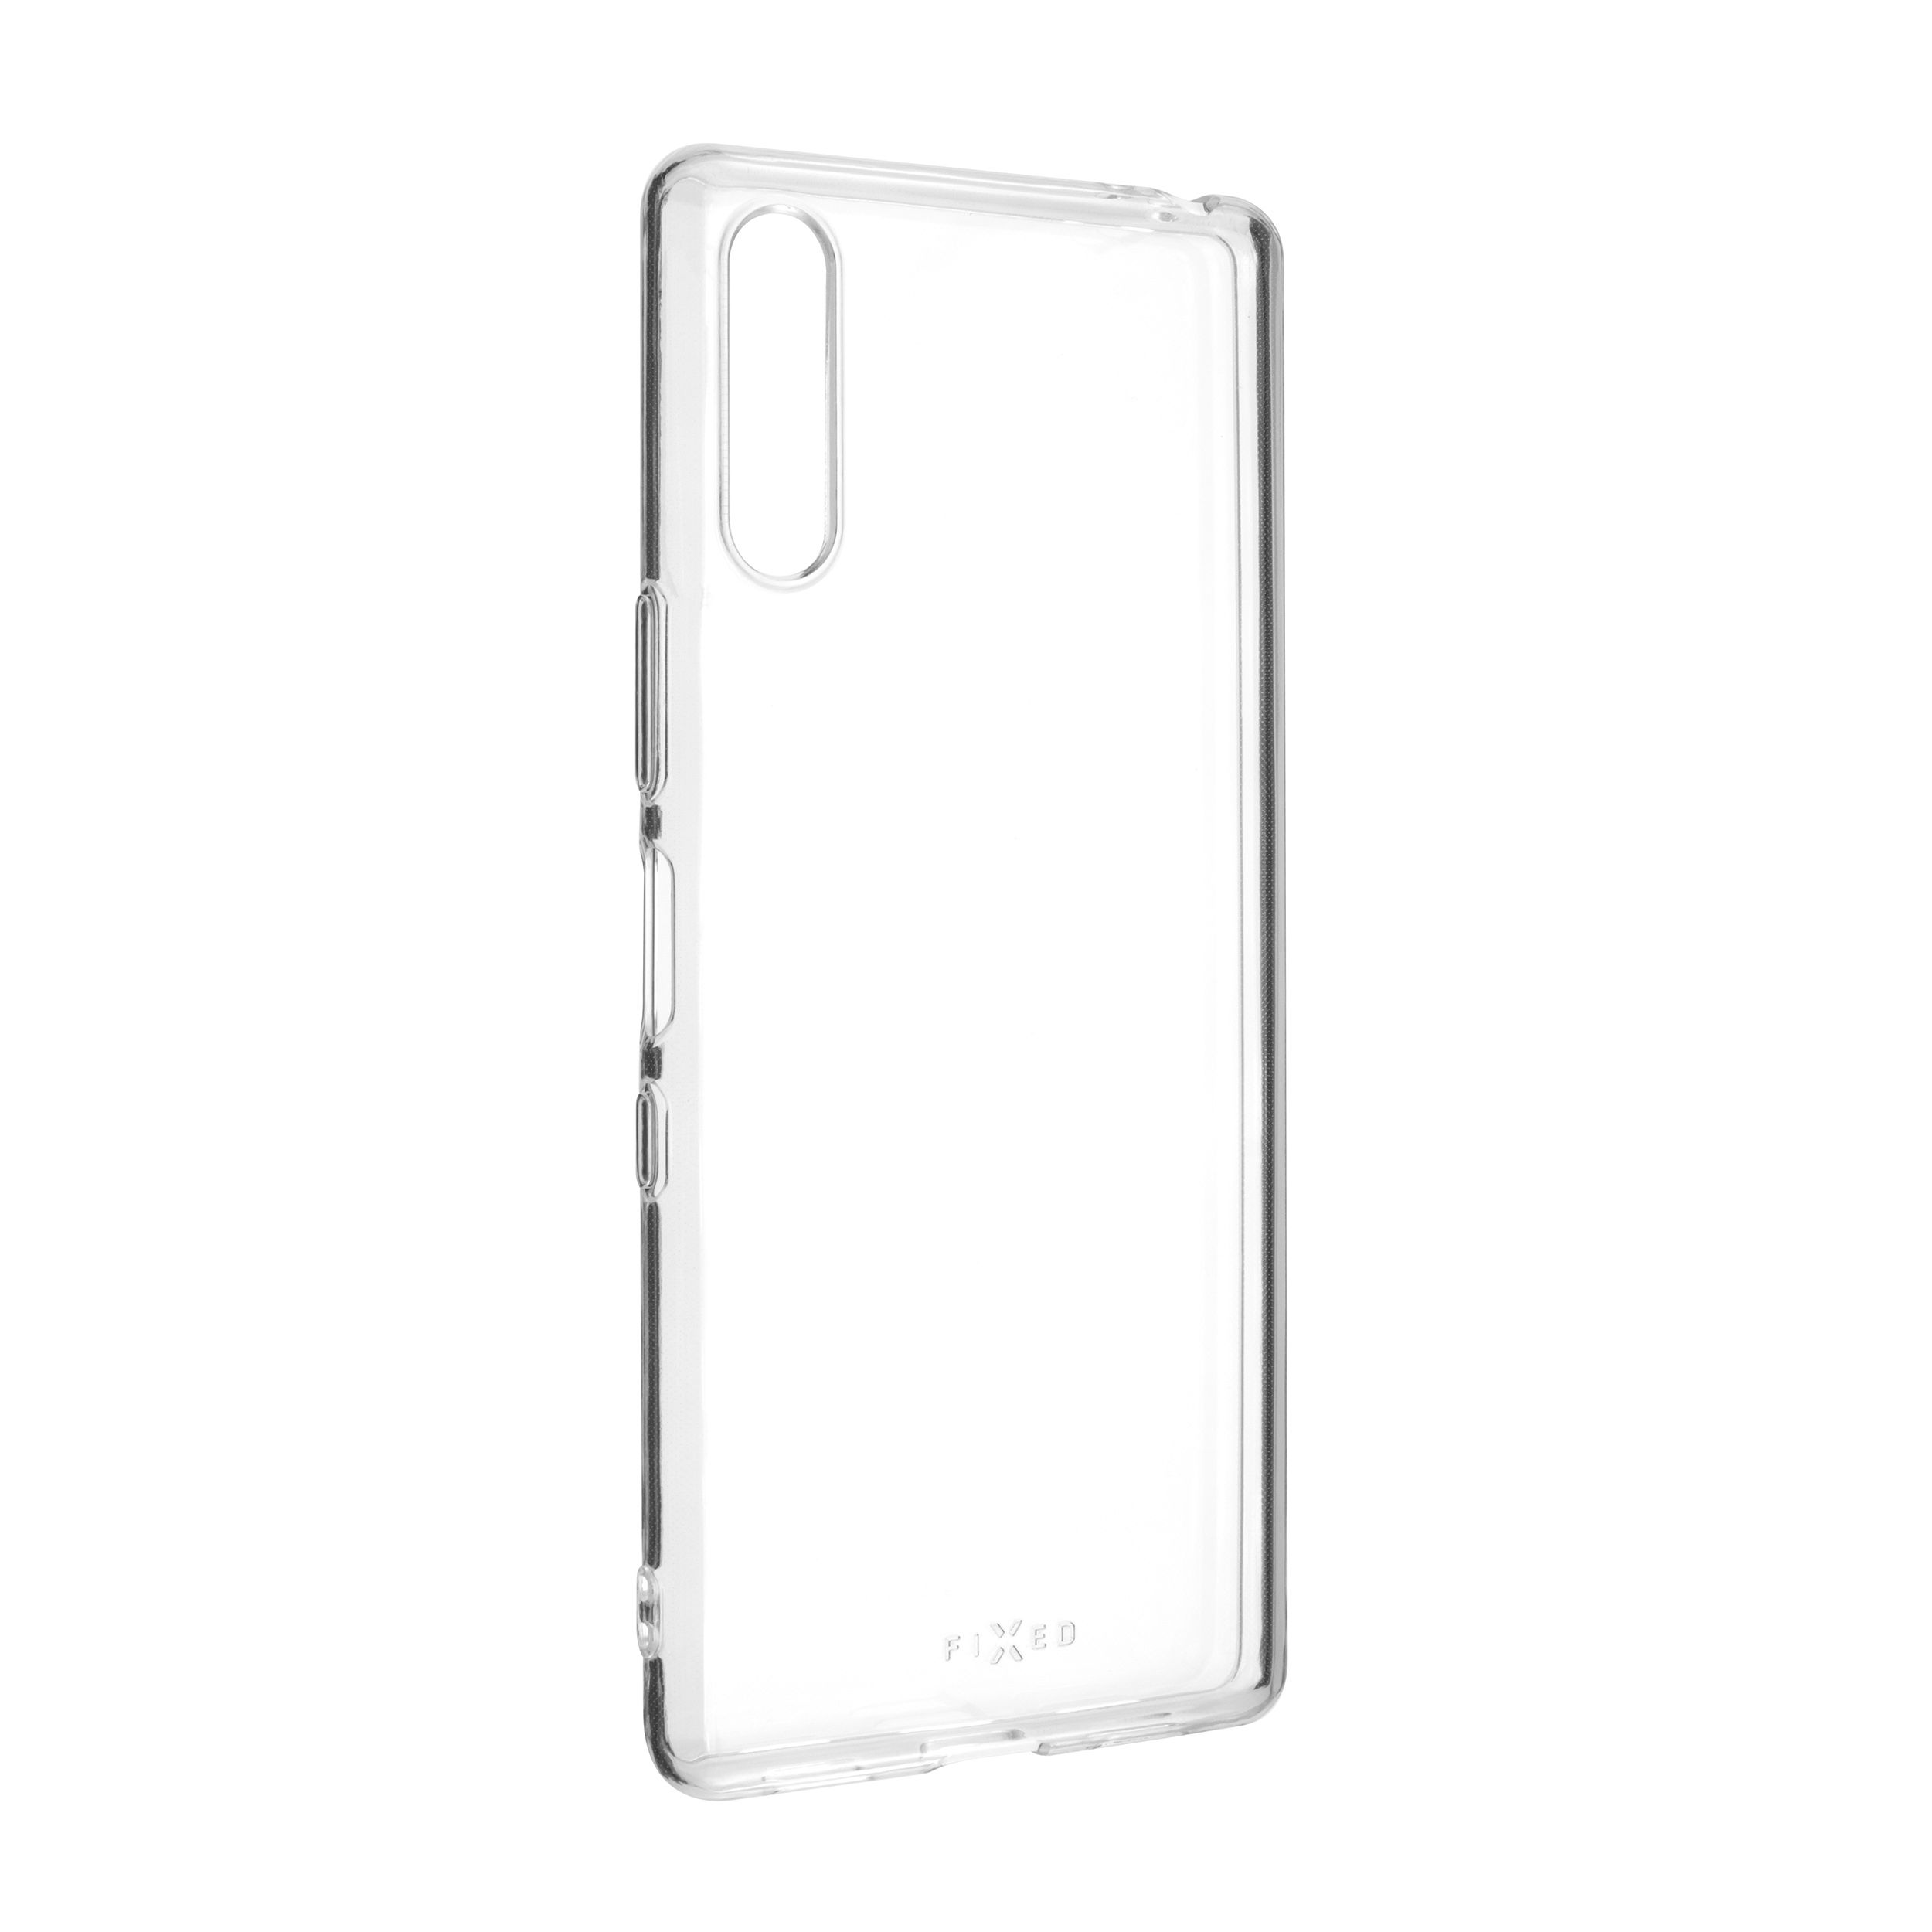 TPU gelové pouzdro pro Sony Xperia L4, čiré